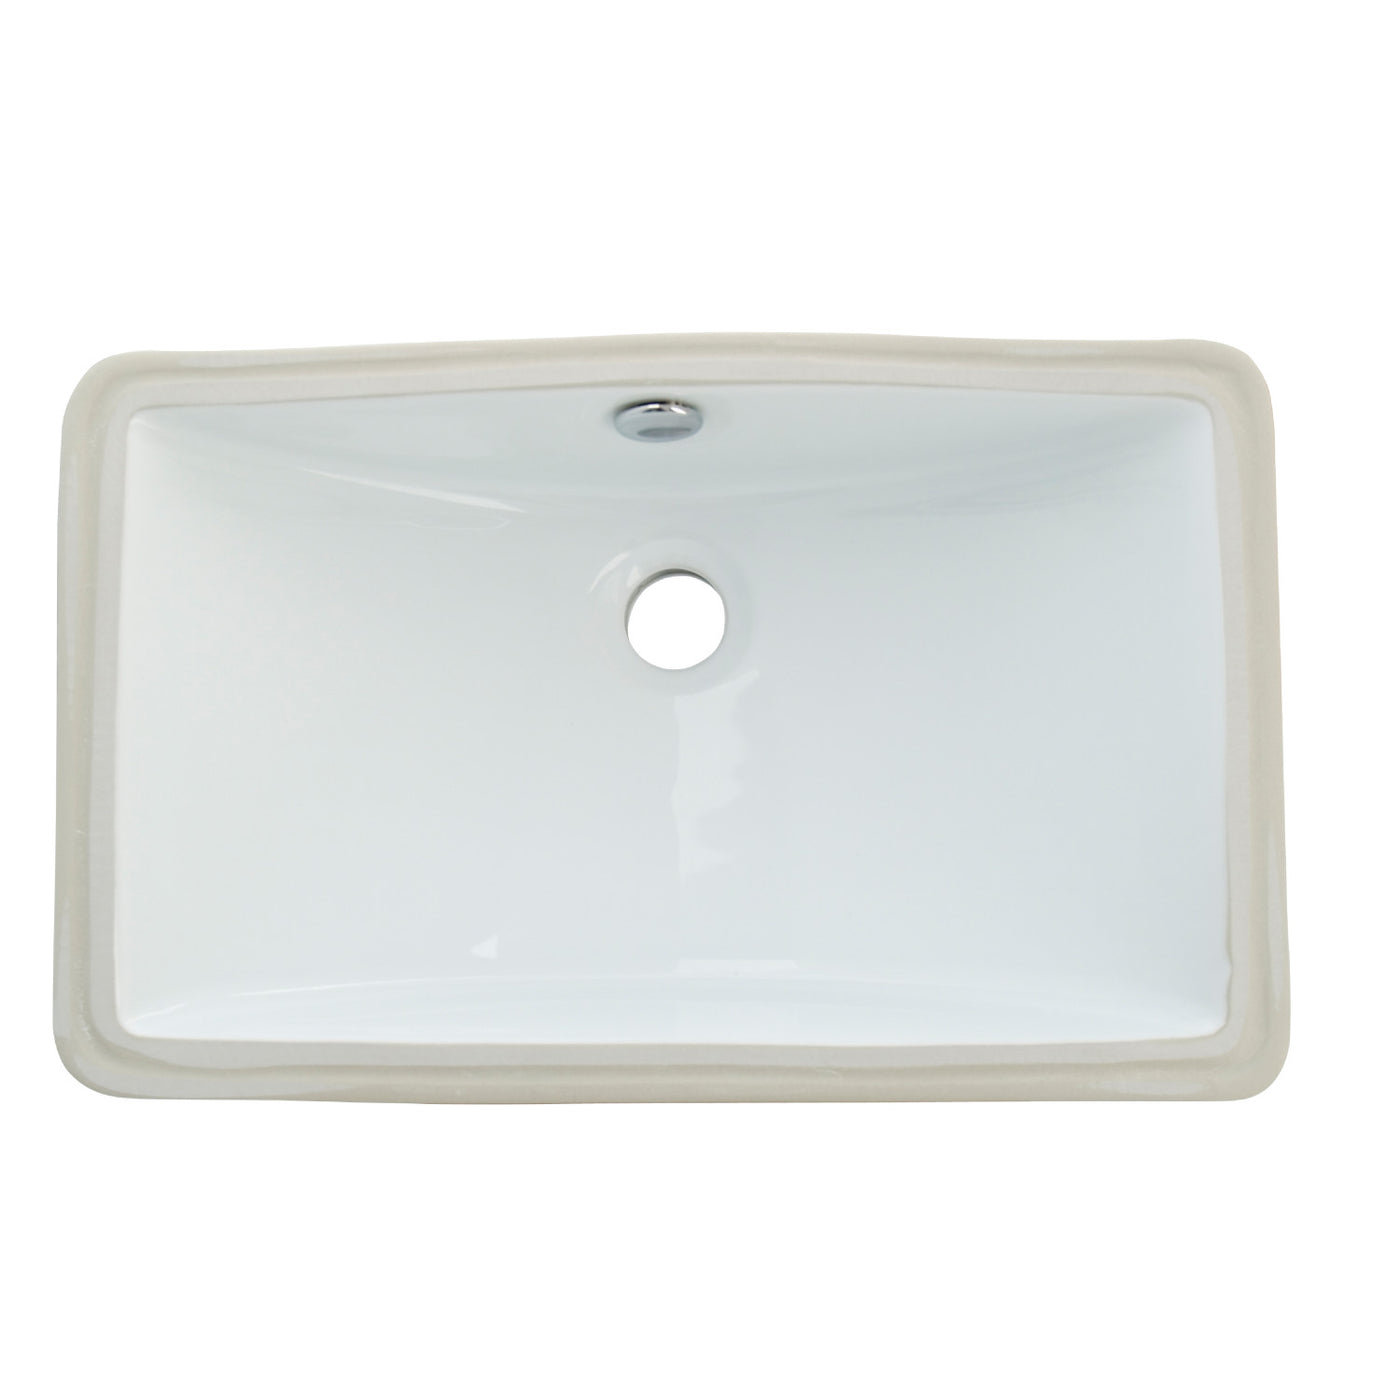 Elements of Design ELB18127 Rectangular Undermount Bathroom Sink, White